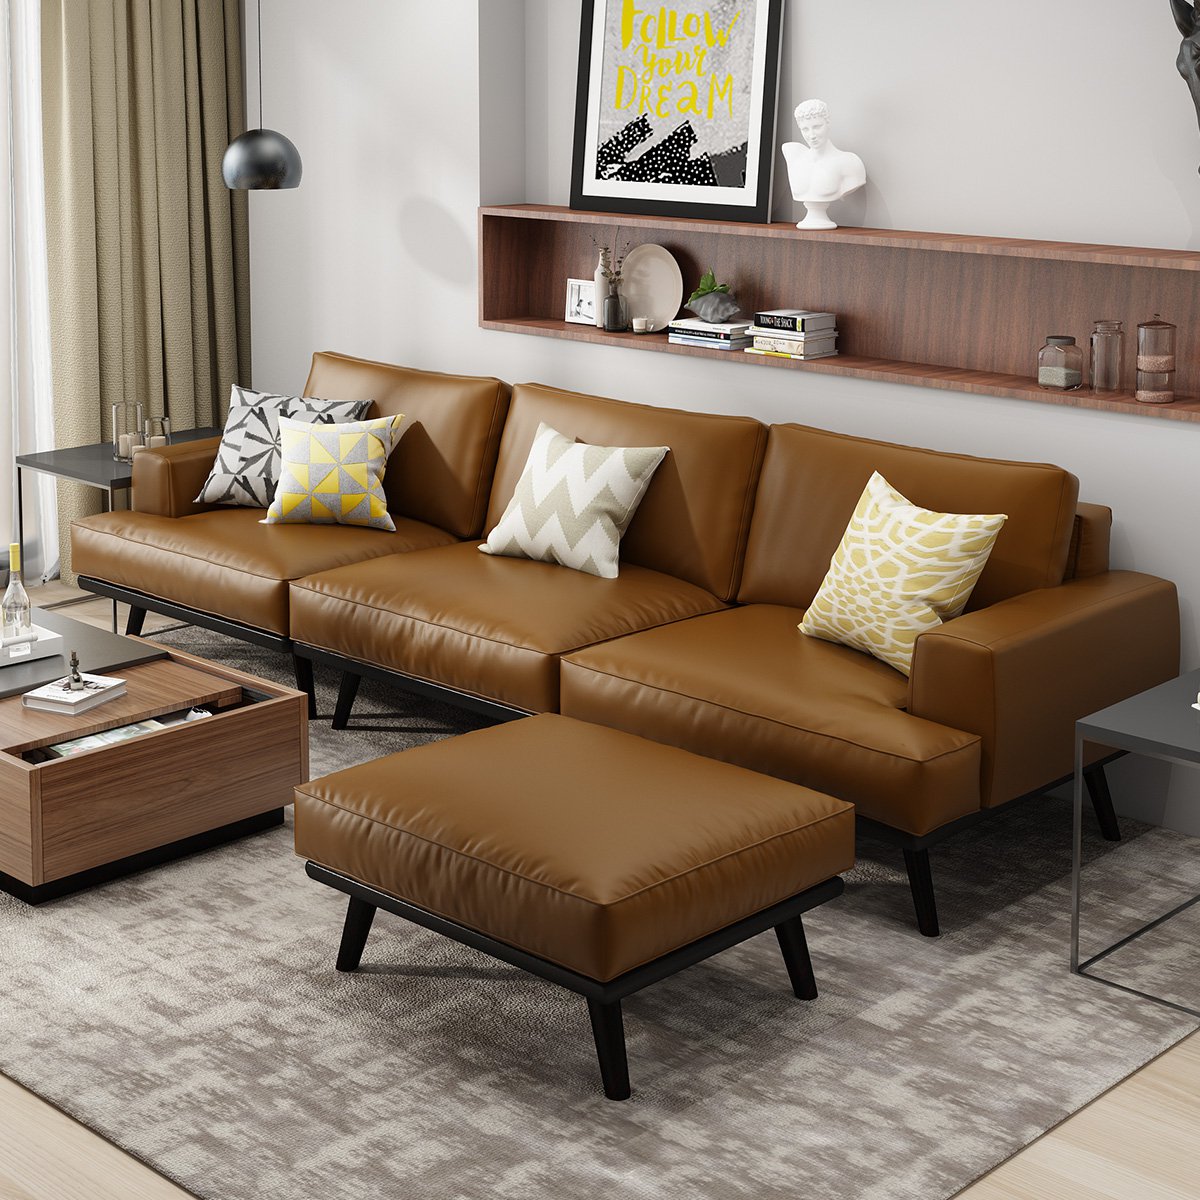 乐和居北欧式沙发客厅小户型皮艺沙发color棕色